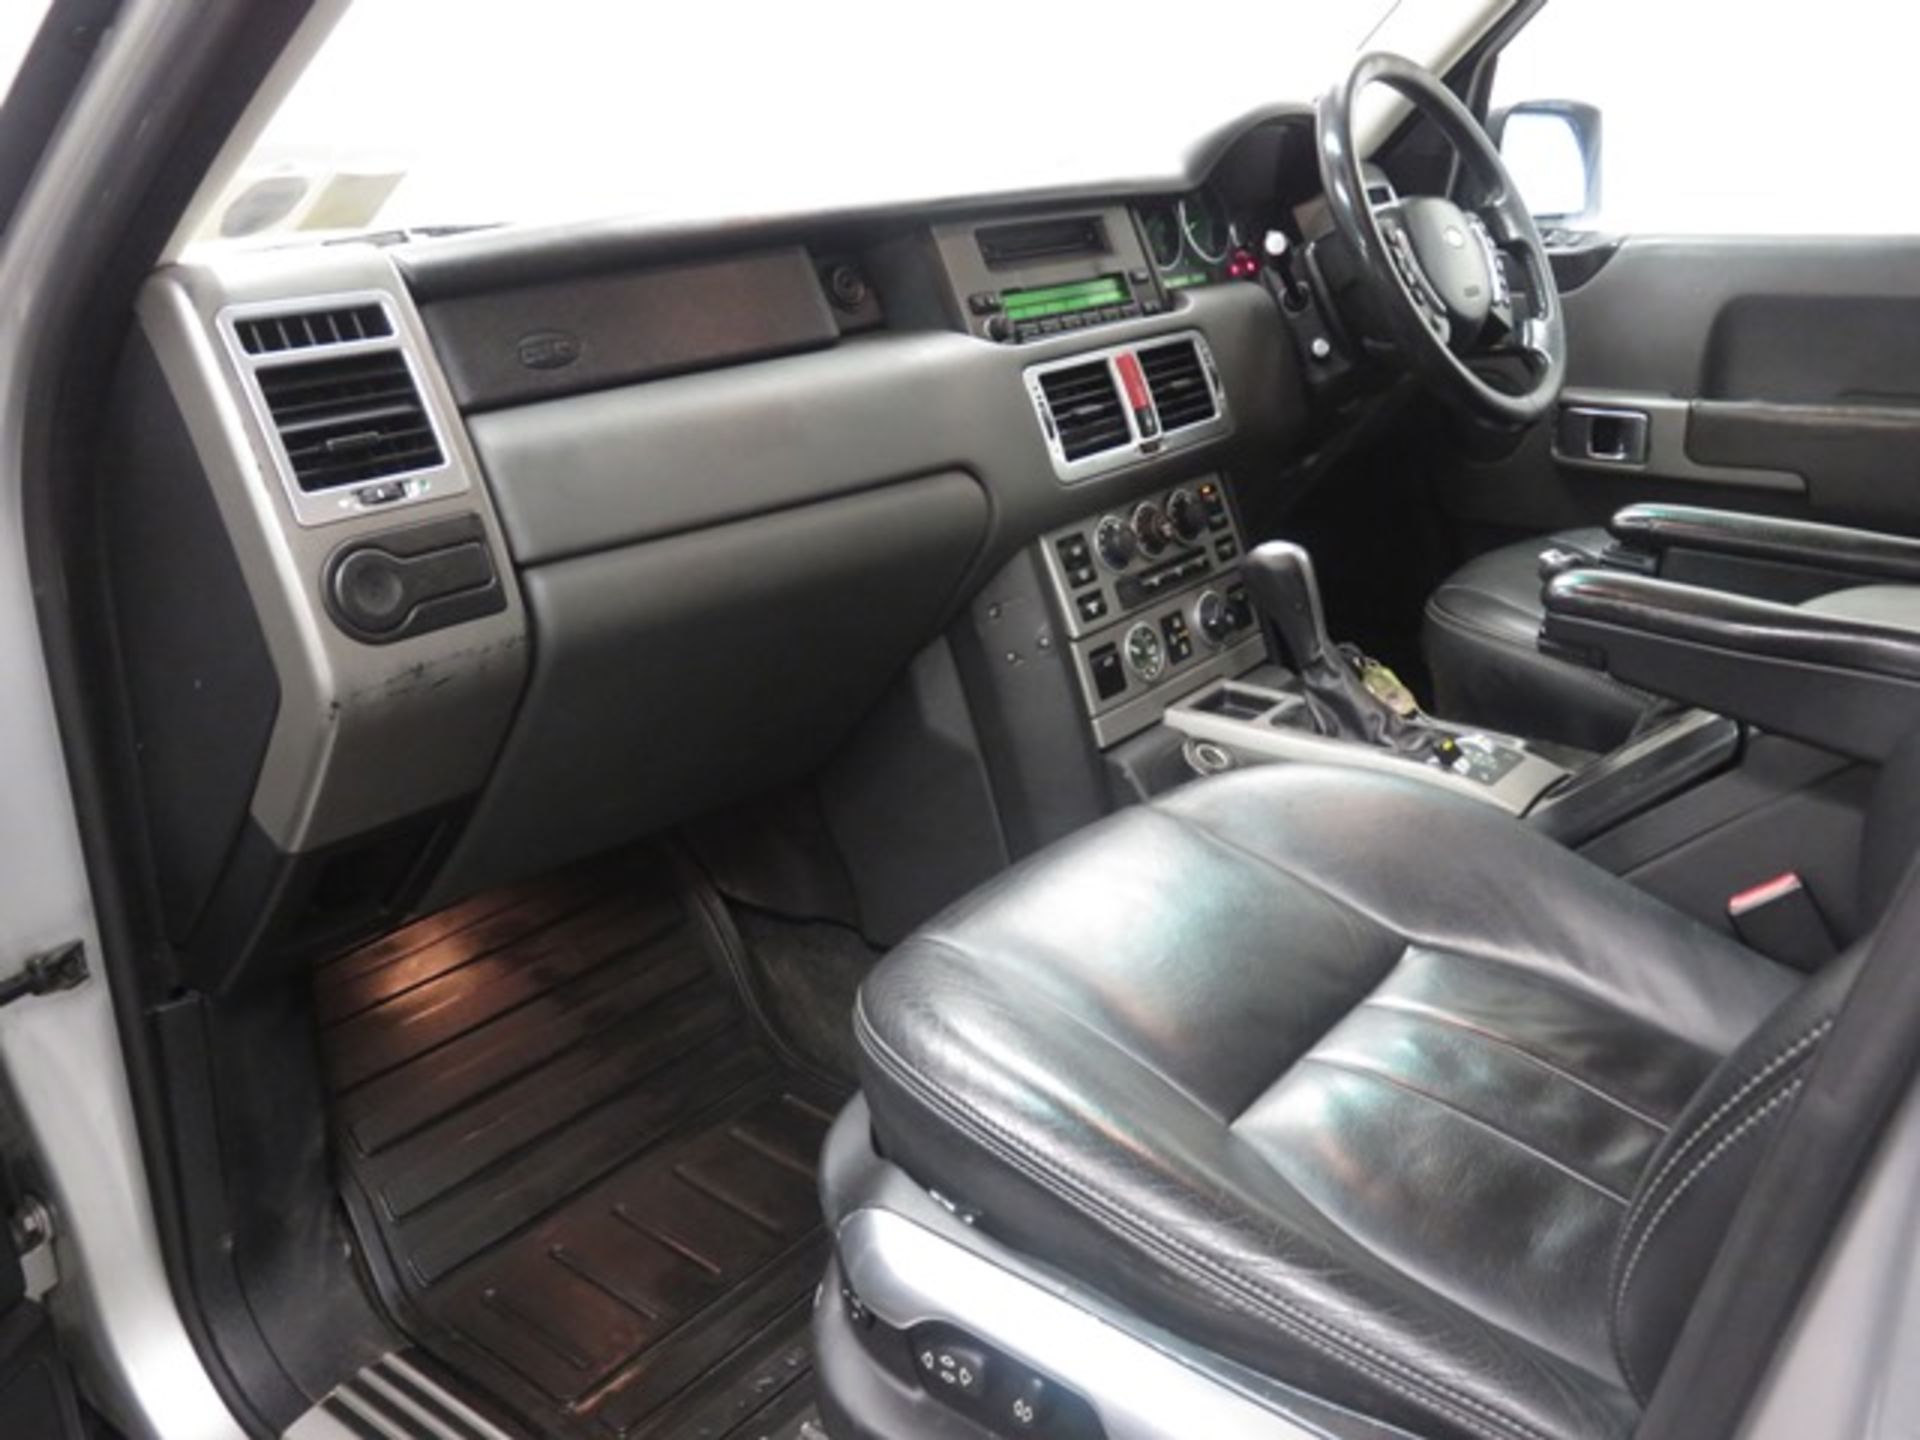 04C1462 Range Rover - Image 3 of 19